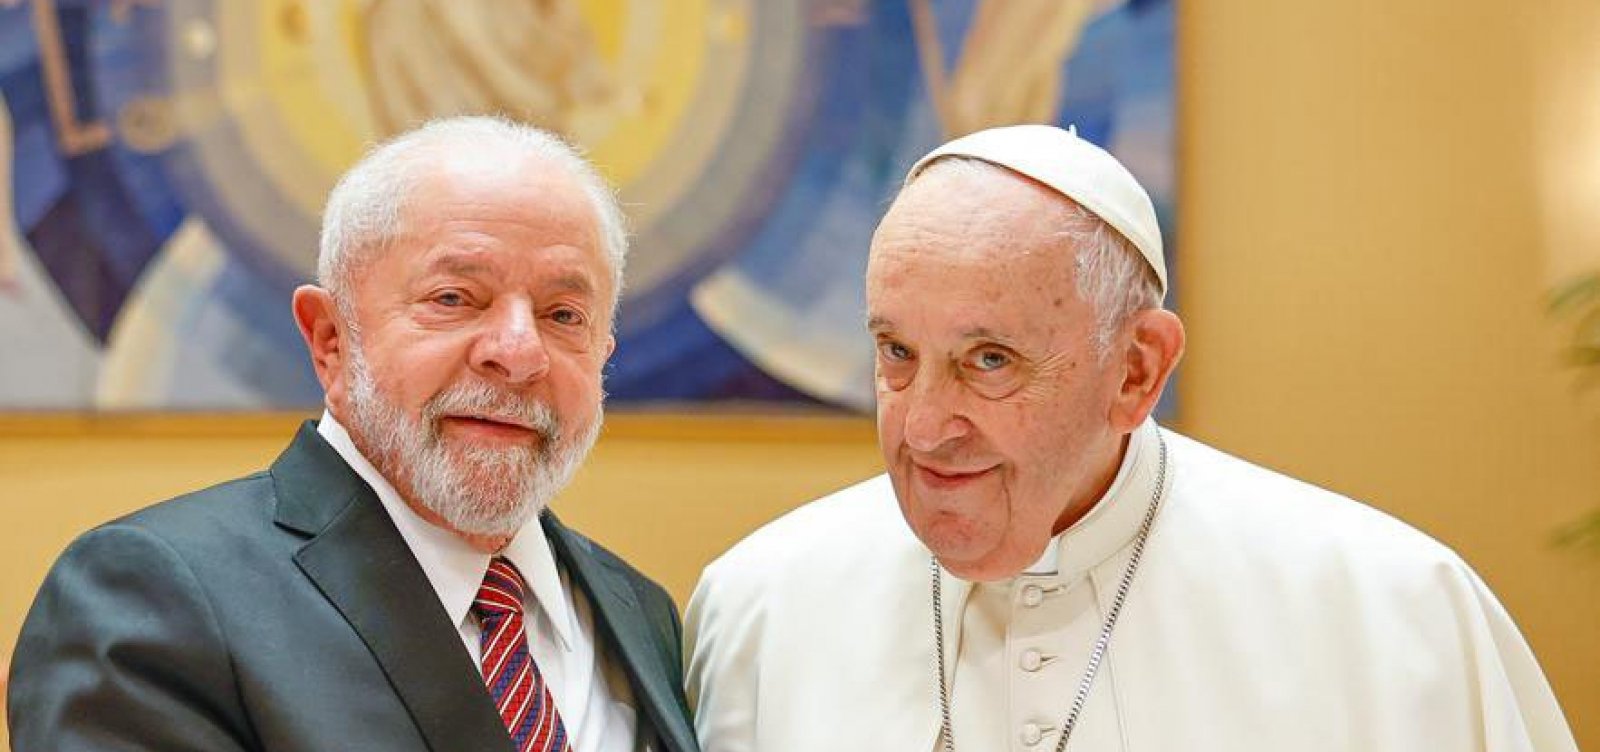 Papa Francisco afirma ser contra legalização de drogas: "Pisoteiam a dignidade humana"